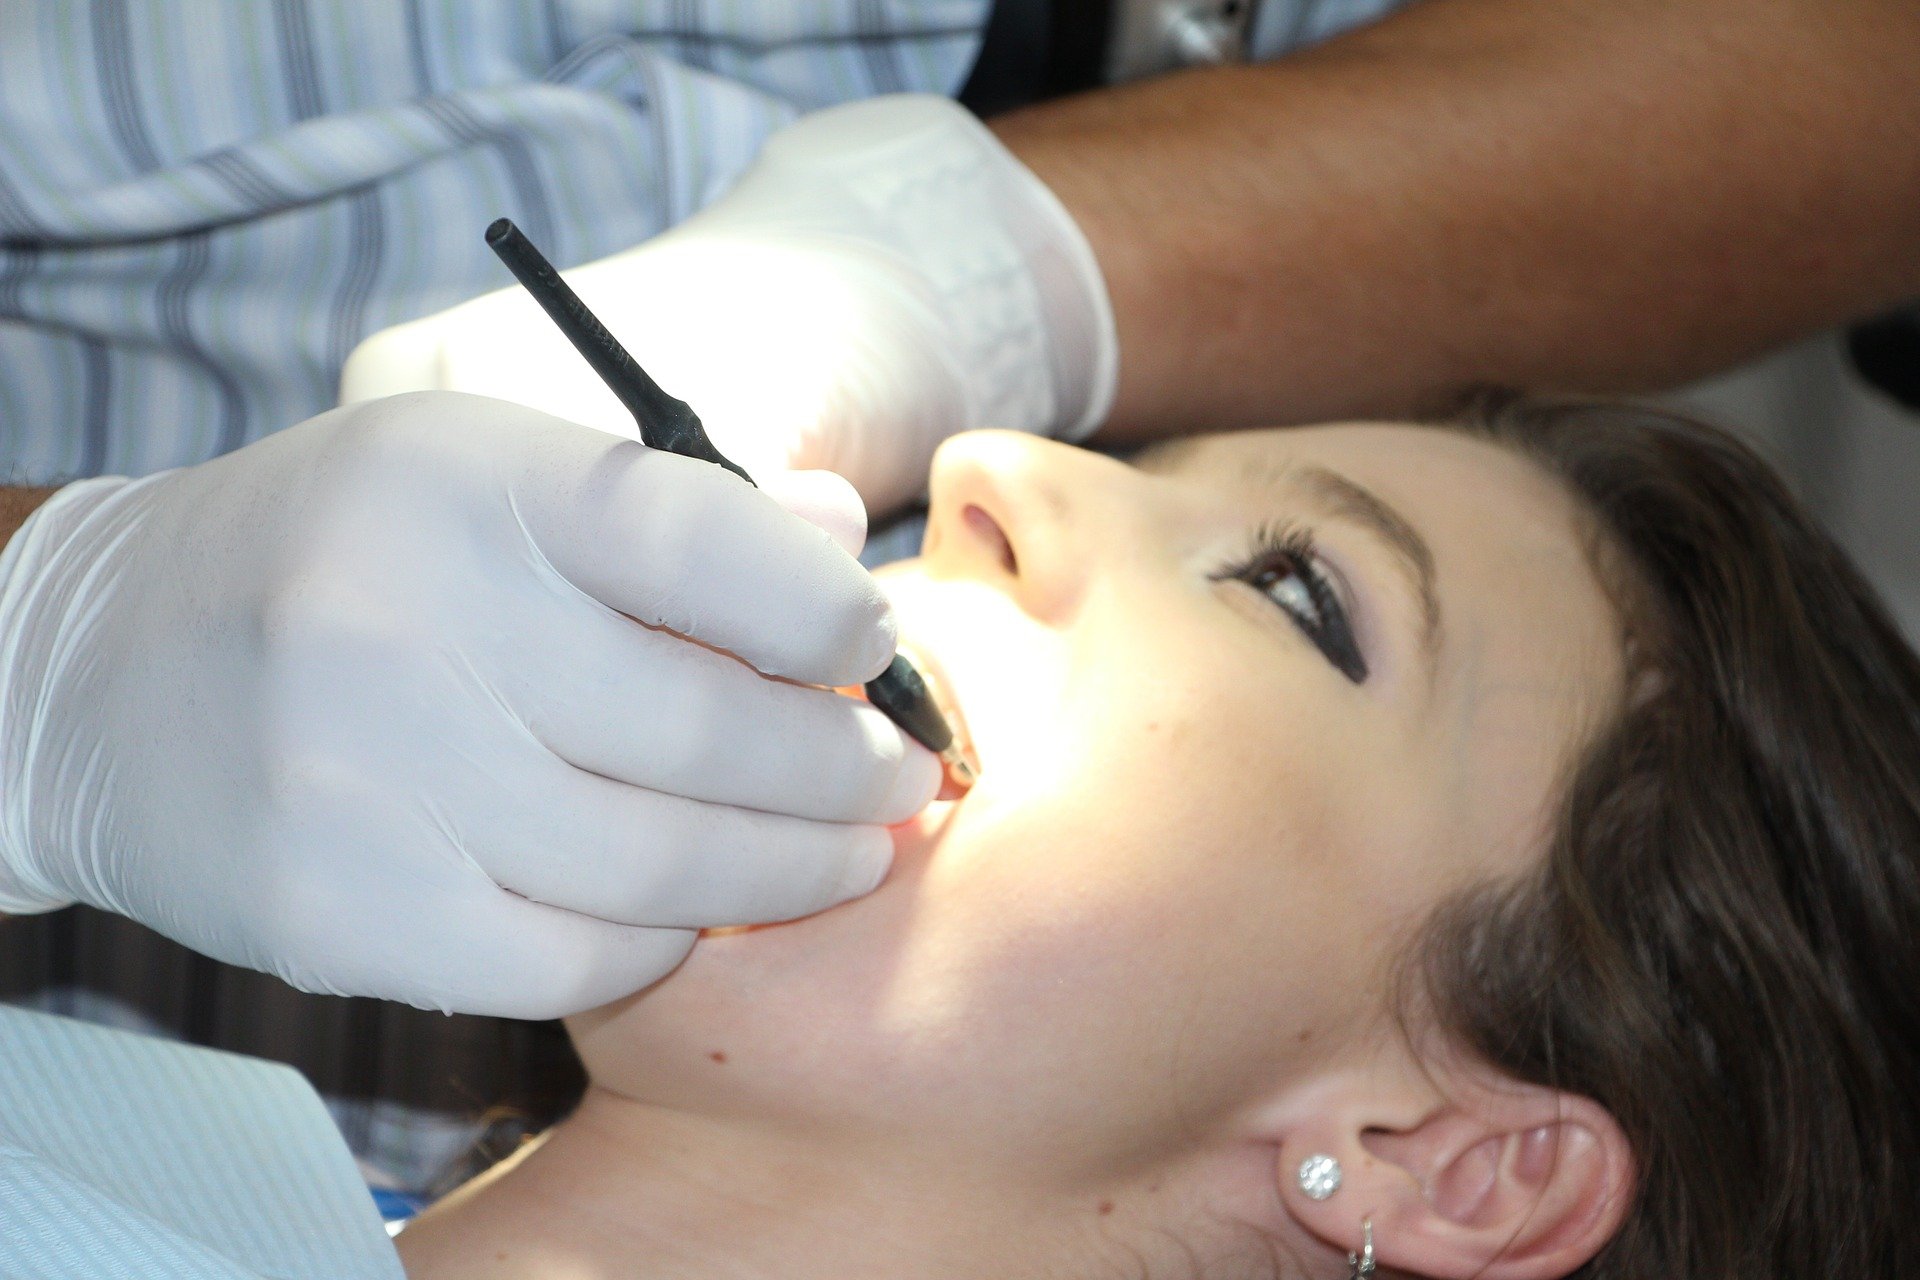 Фото Жительница Бурятии притворилась стоматологом и сломала челюсть пациенту